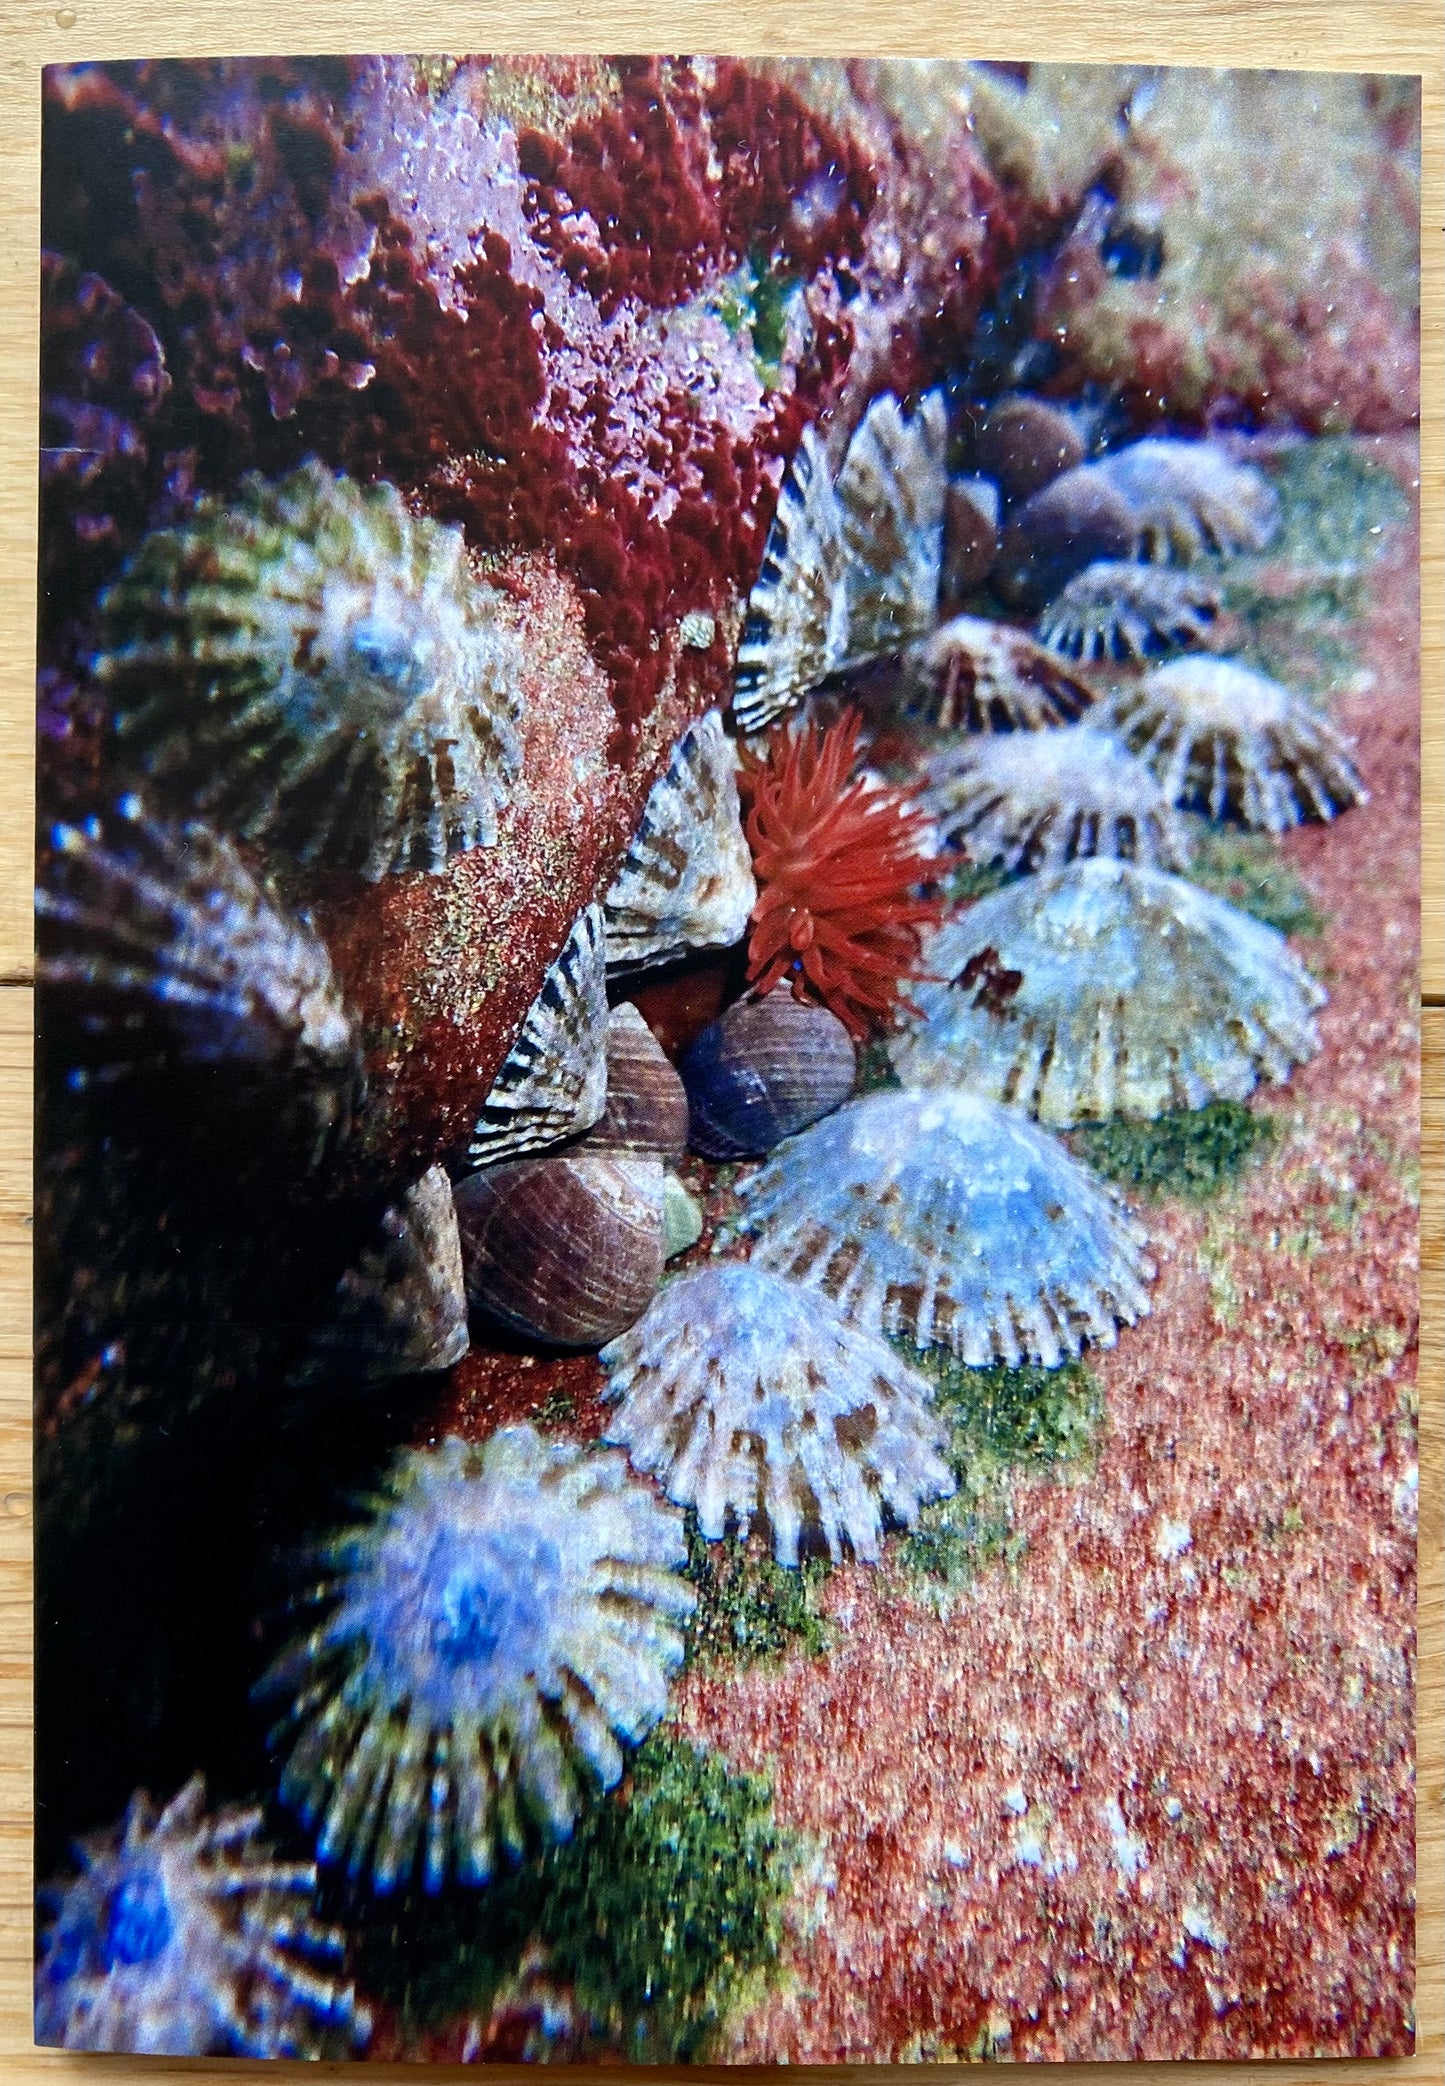 Underwater Printed Cards | Pack of 5